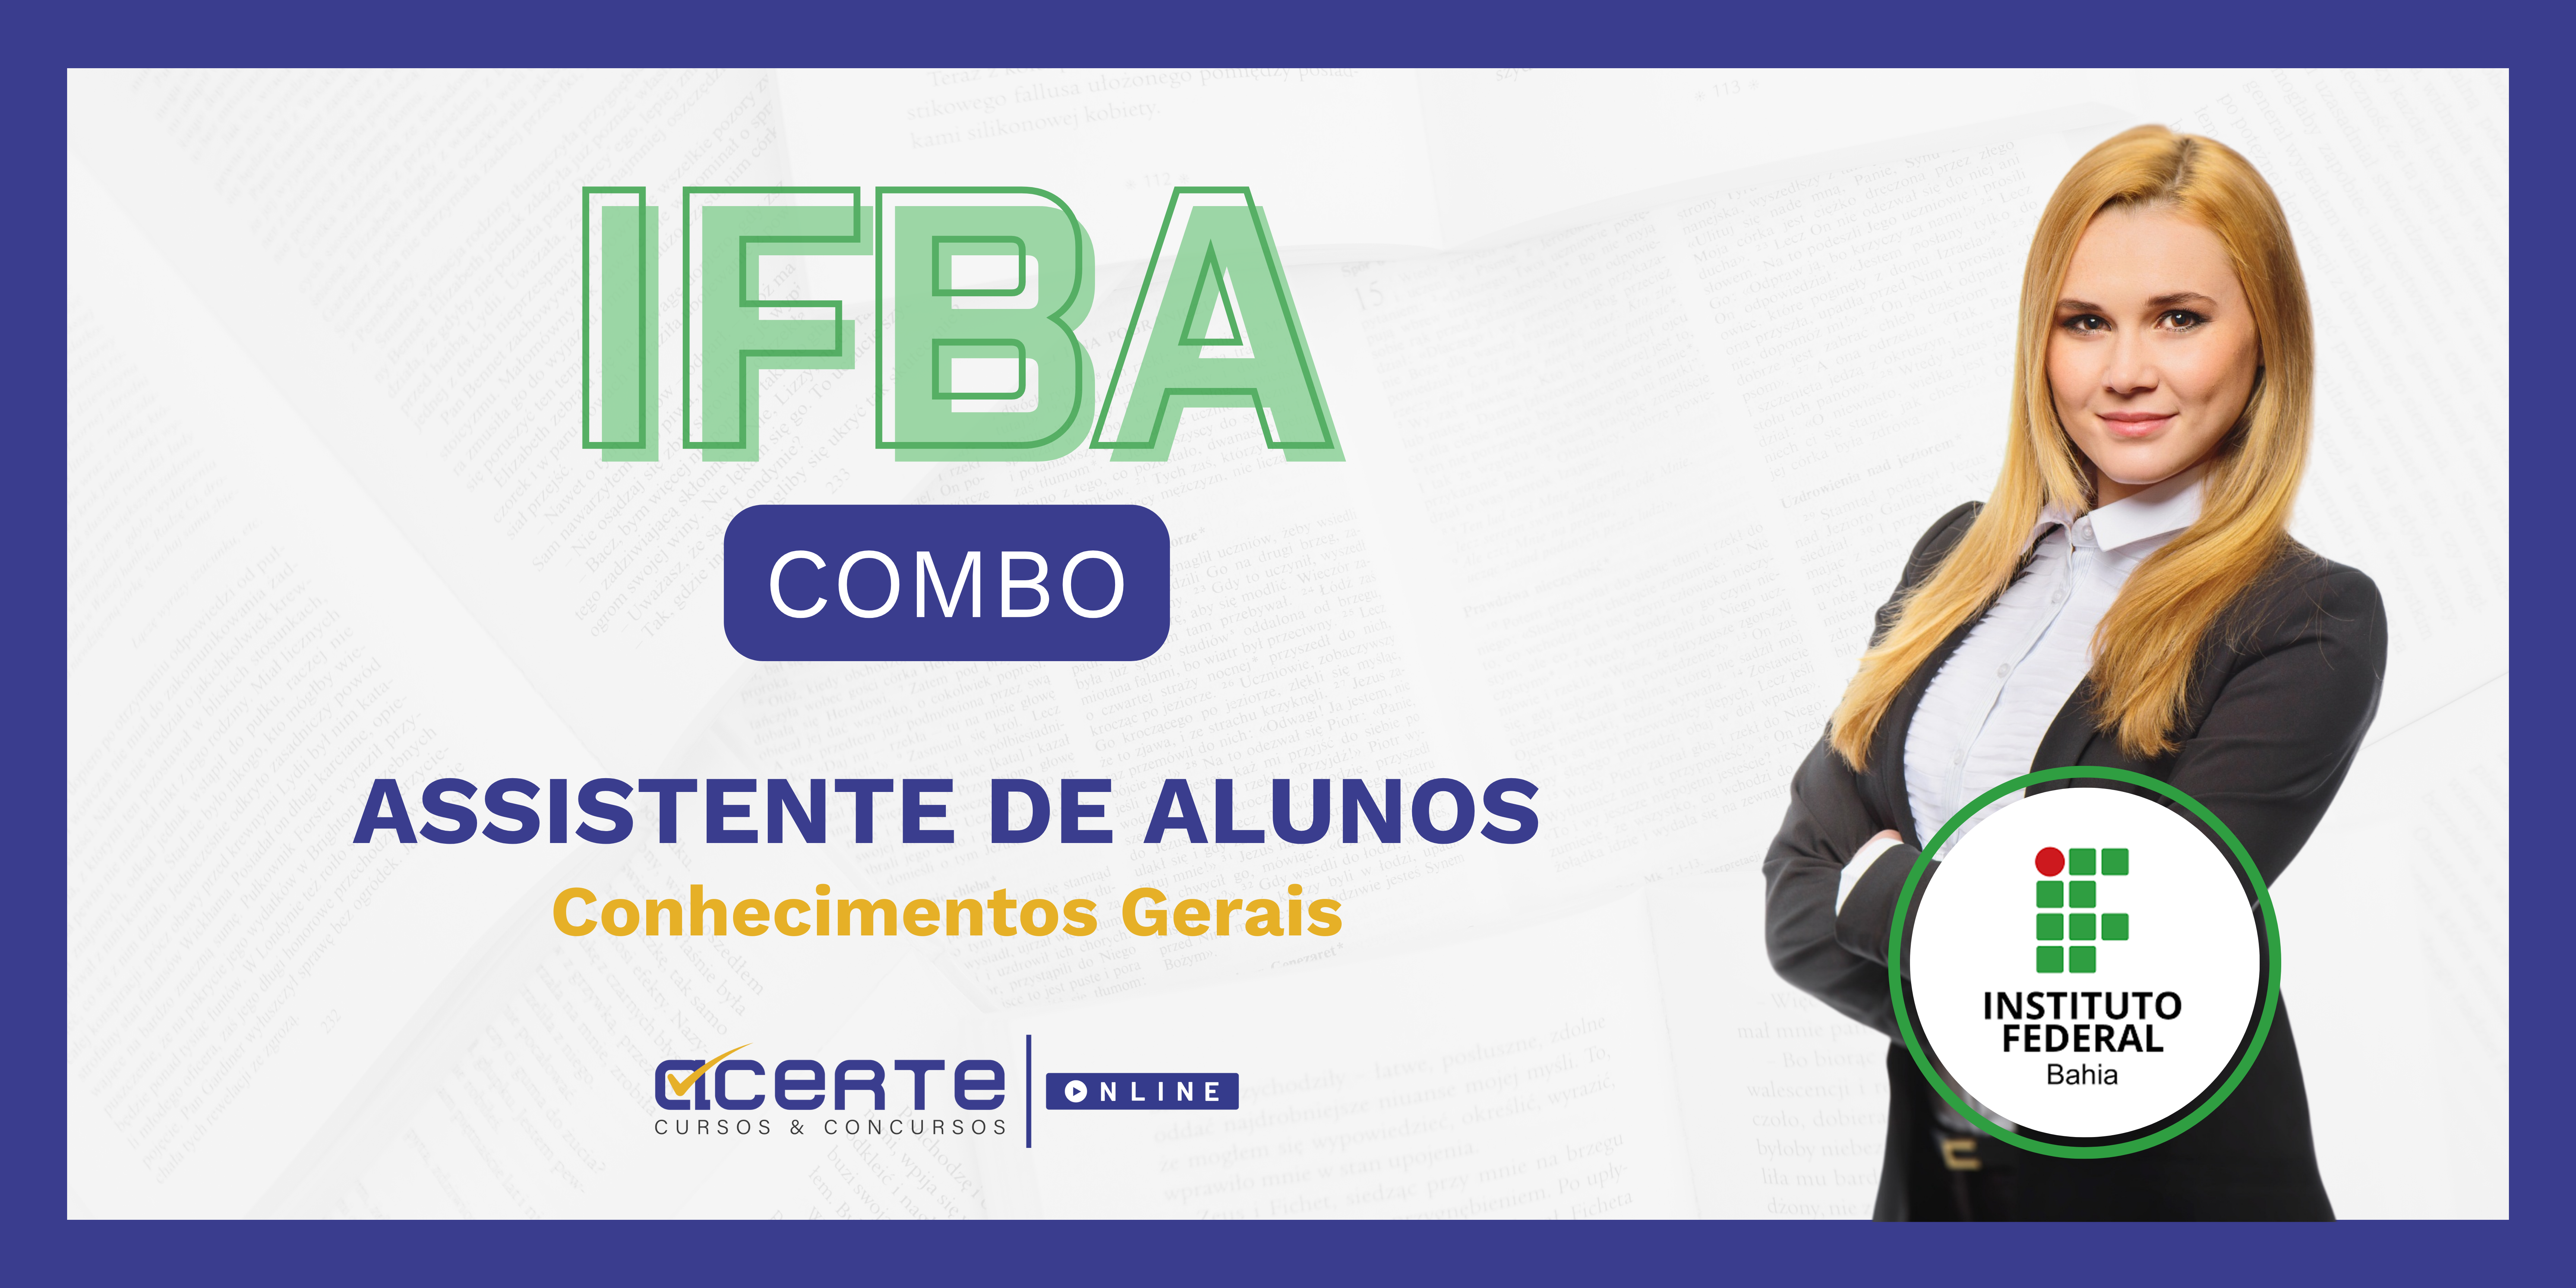 IFBA COMBO - Assistente de Alunos - Conhecimentos Gerais - Edital Publicado - ONLINE